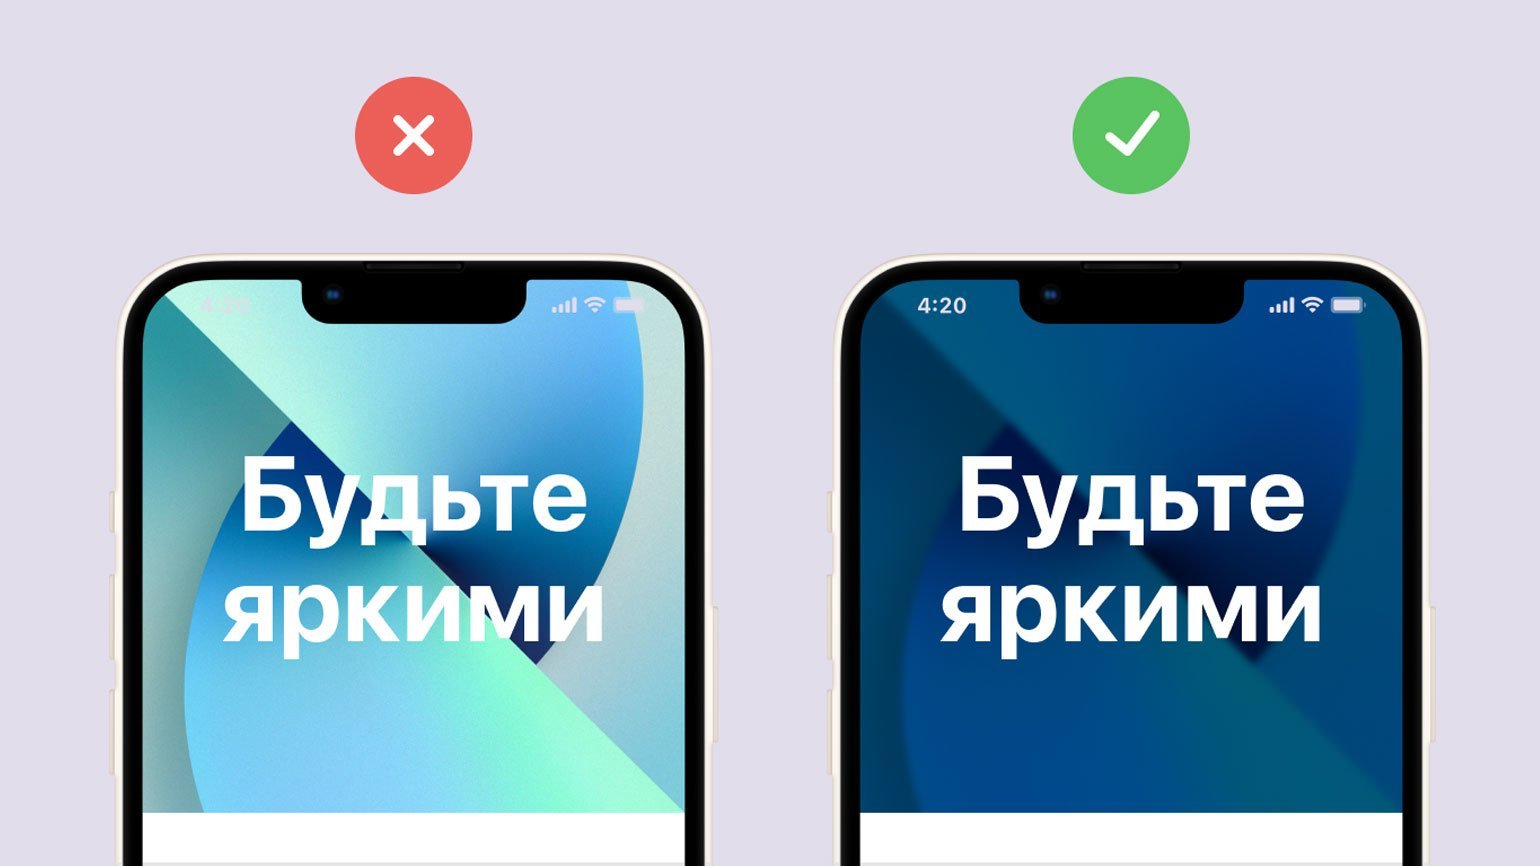 Экраны телефонов с разными иллюстрациями под текстом. Слева текст не видно из-за слишком яркой картинки. Справа — картинка темнее и текст на ней видно лучше.